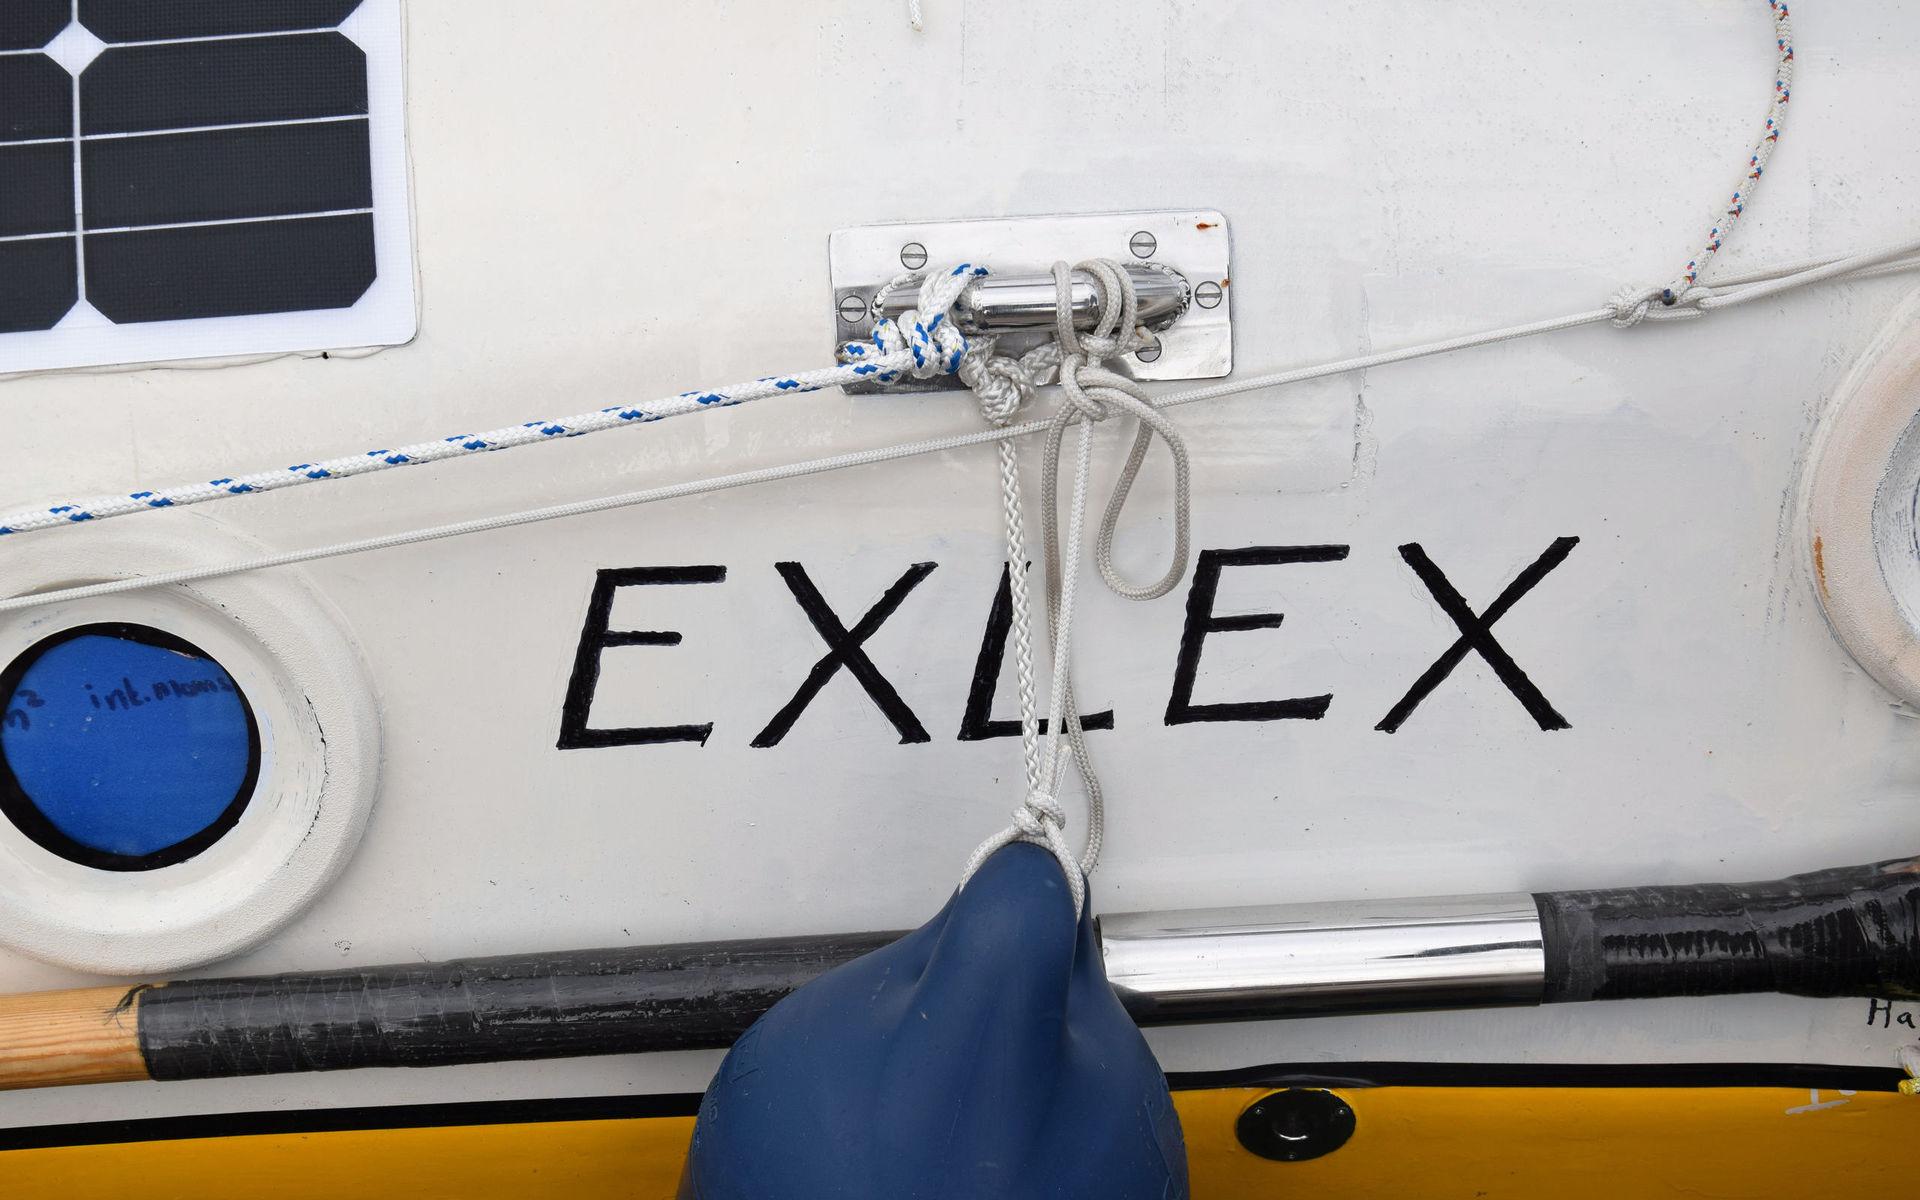 Segelbåtens namn Exlex är latin och betyder utanför lagen, berättar skepparen Yrvind